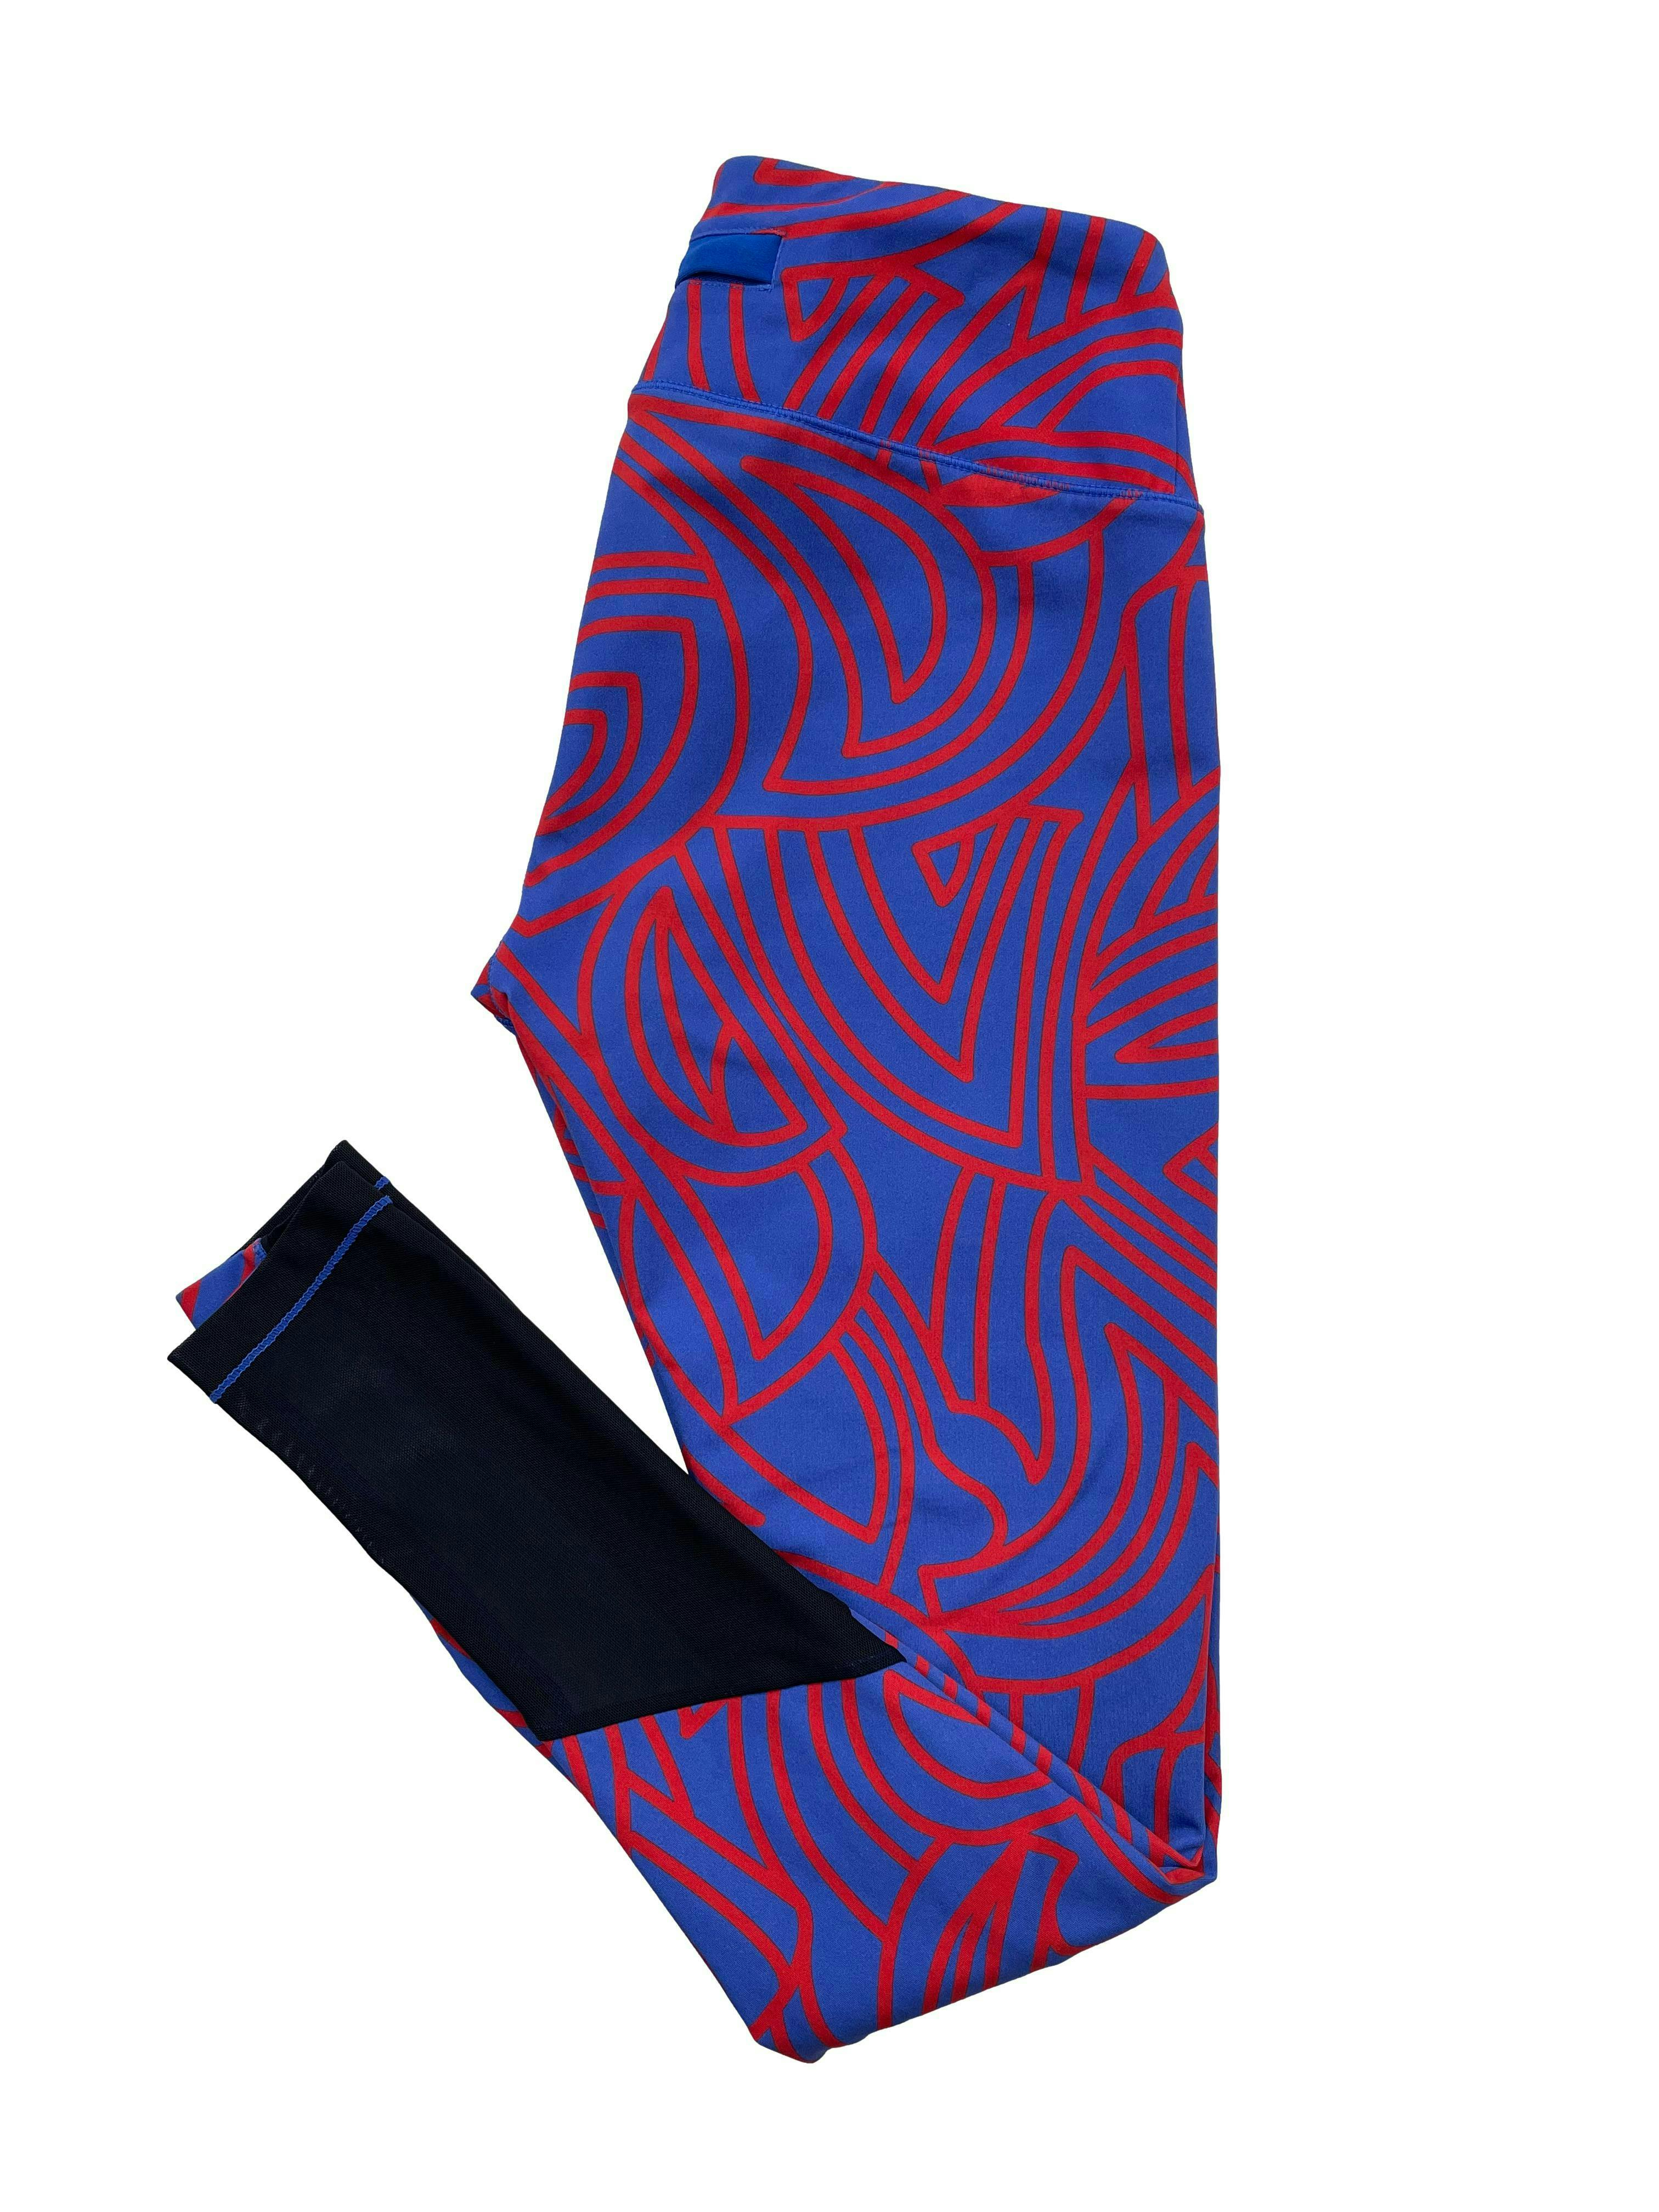 Leggings 2XIST azul con estampado lineal rojo, tiene un bolsillo posterior y mesh negro en pantorillas. Cintura 66cm sin estirar, Tiro 24cm, Largo 88cm.